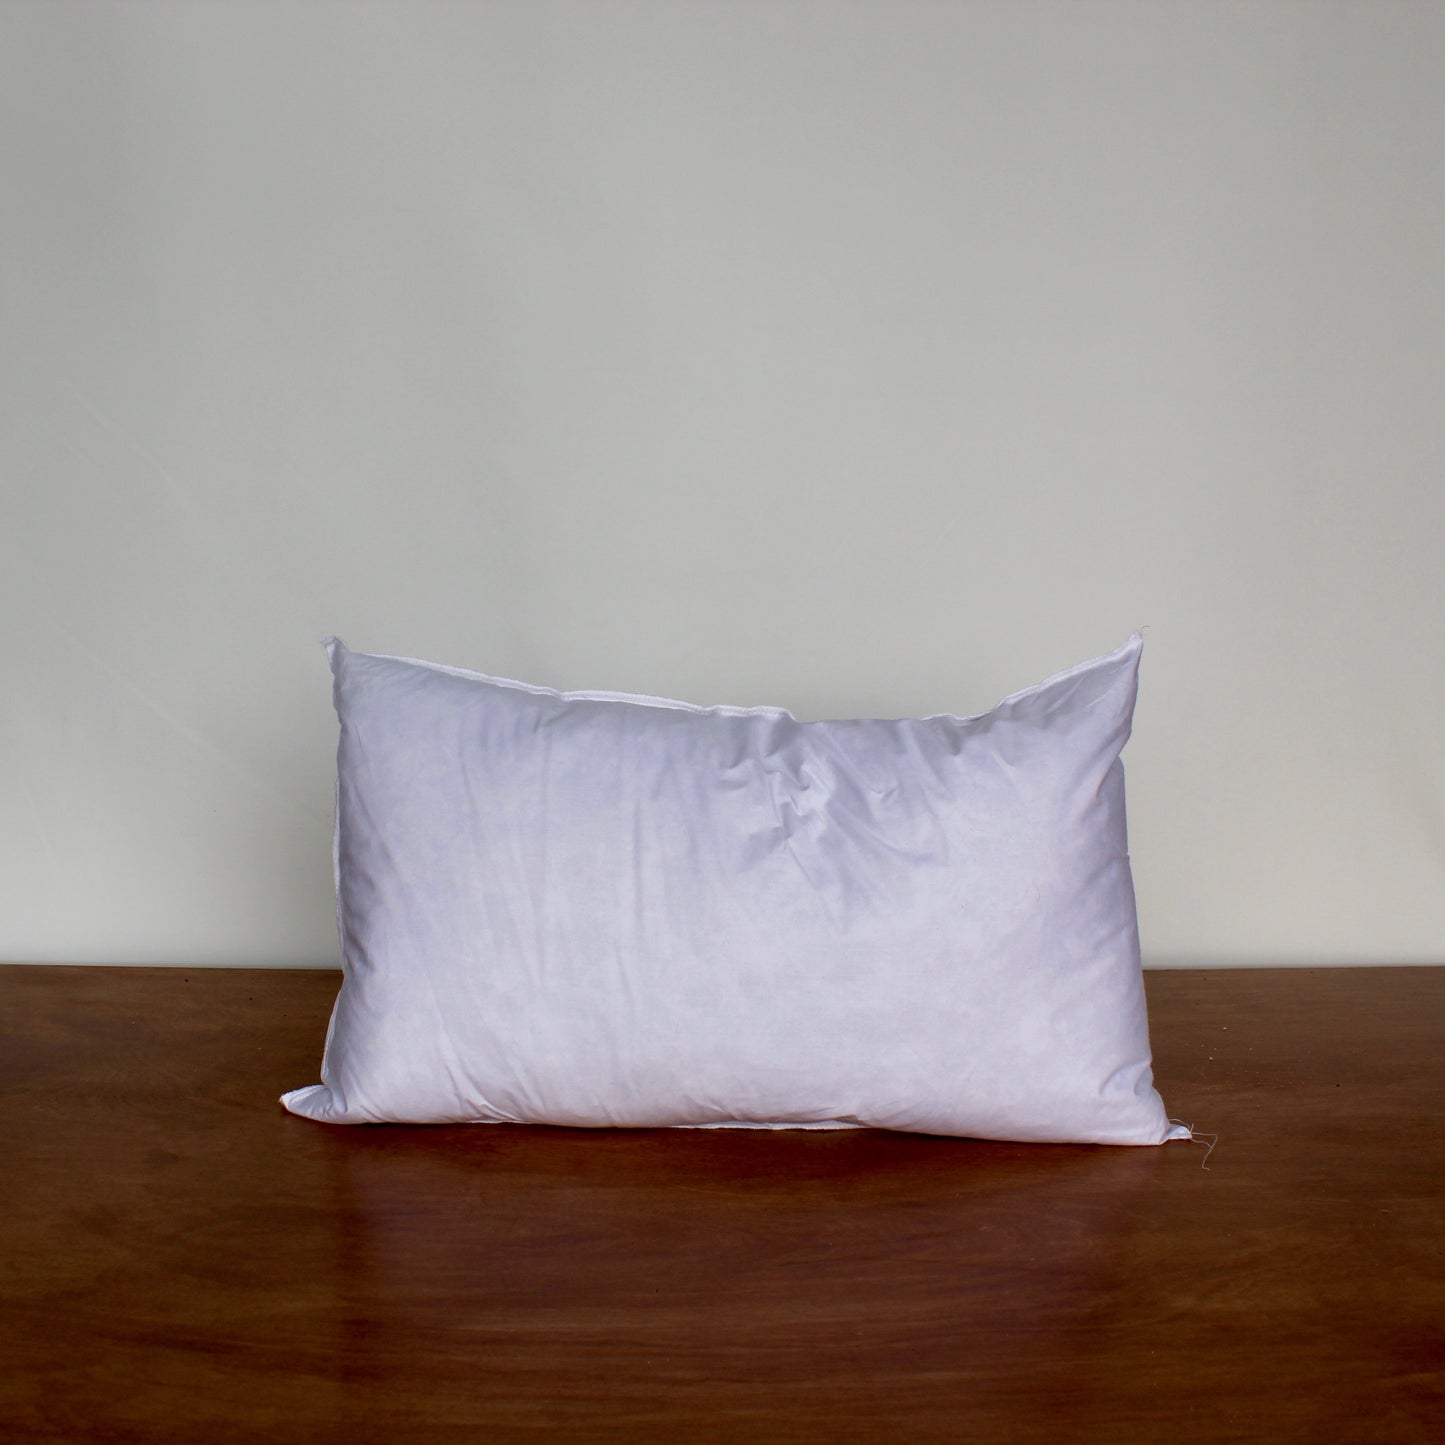 Rectangular Pillow Forms